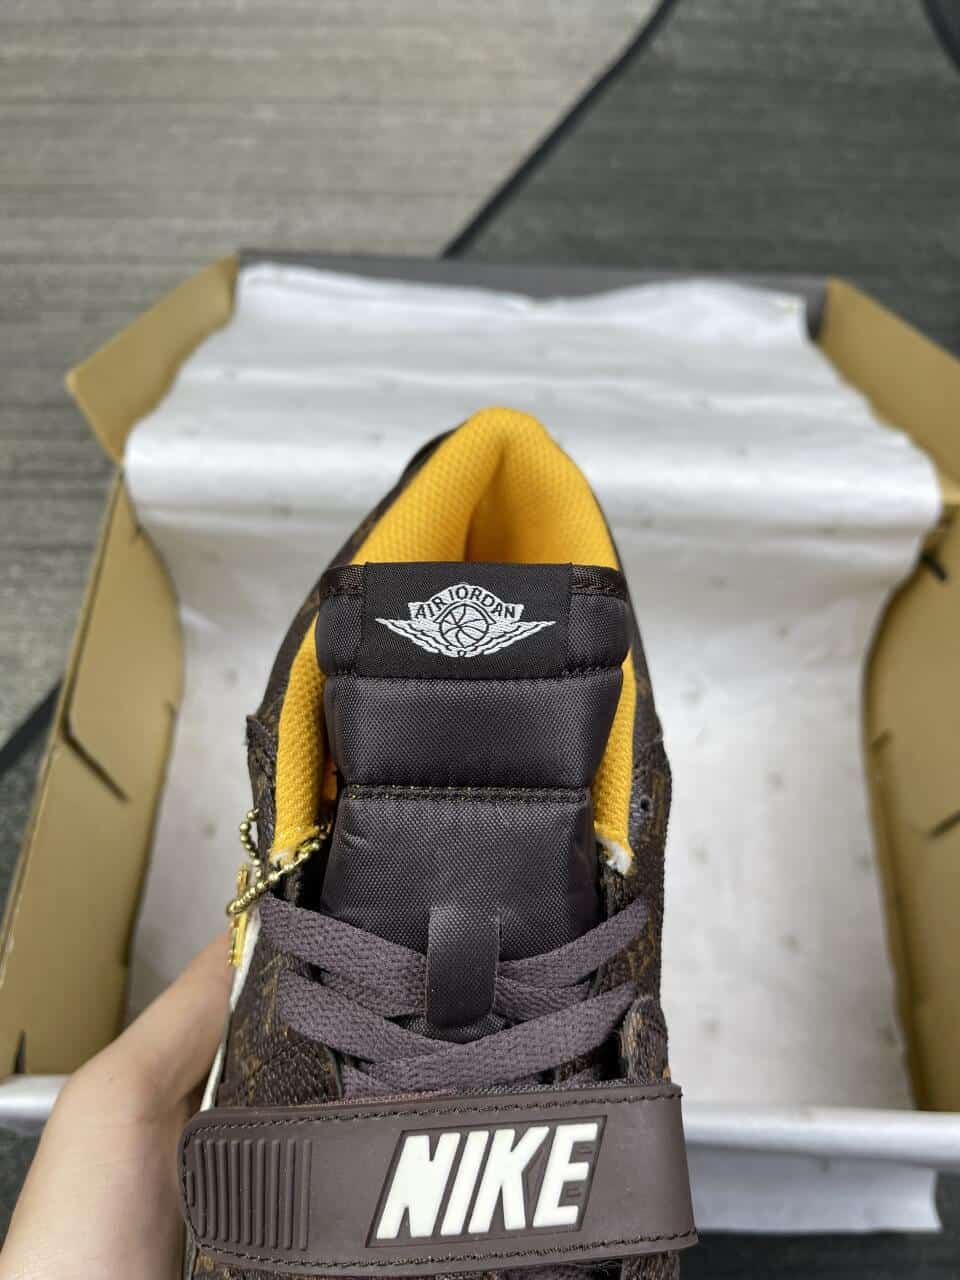 Sneaker News on Twitter Louis Vuitton x Air Jordan 1 Concept  httpstcoDC1uIatfKq  Twitter